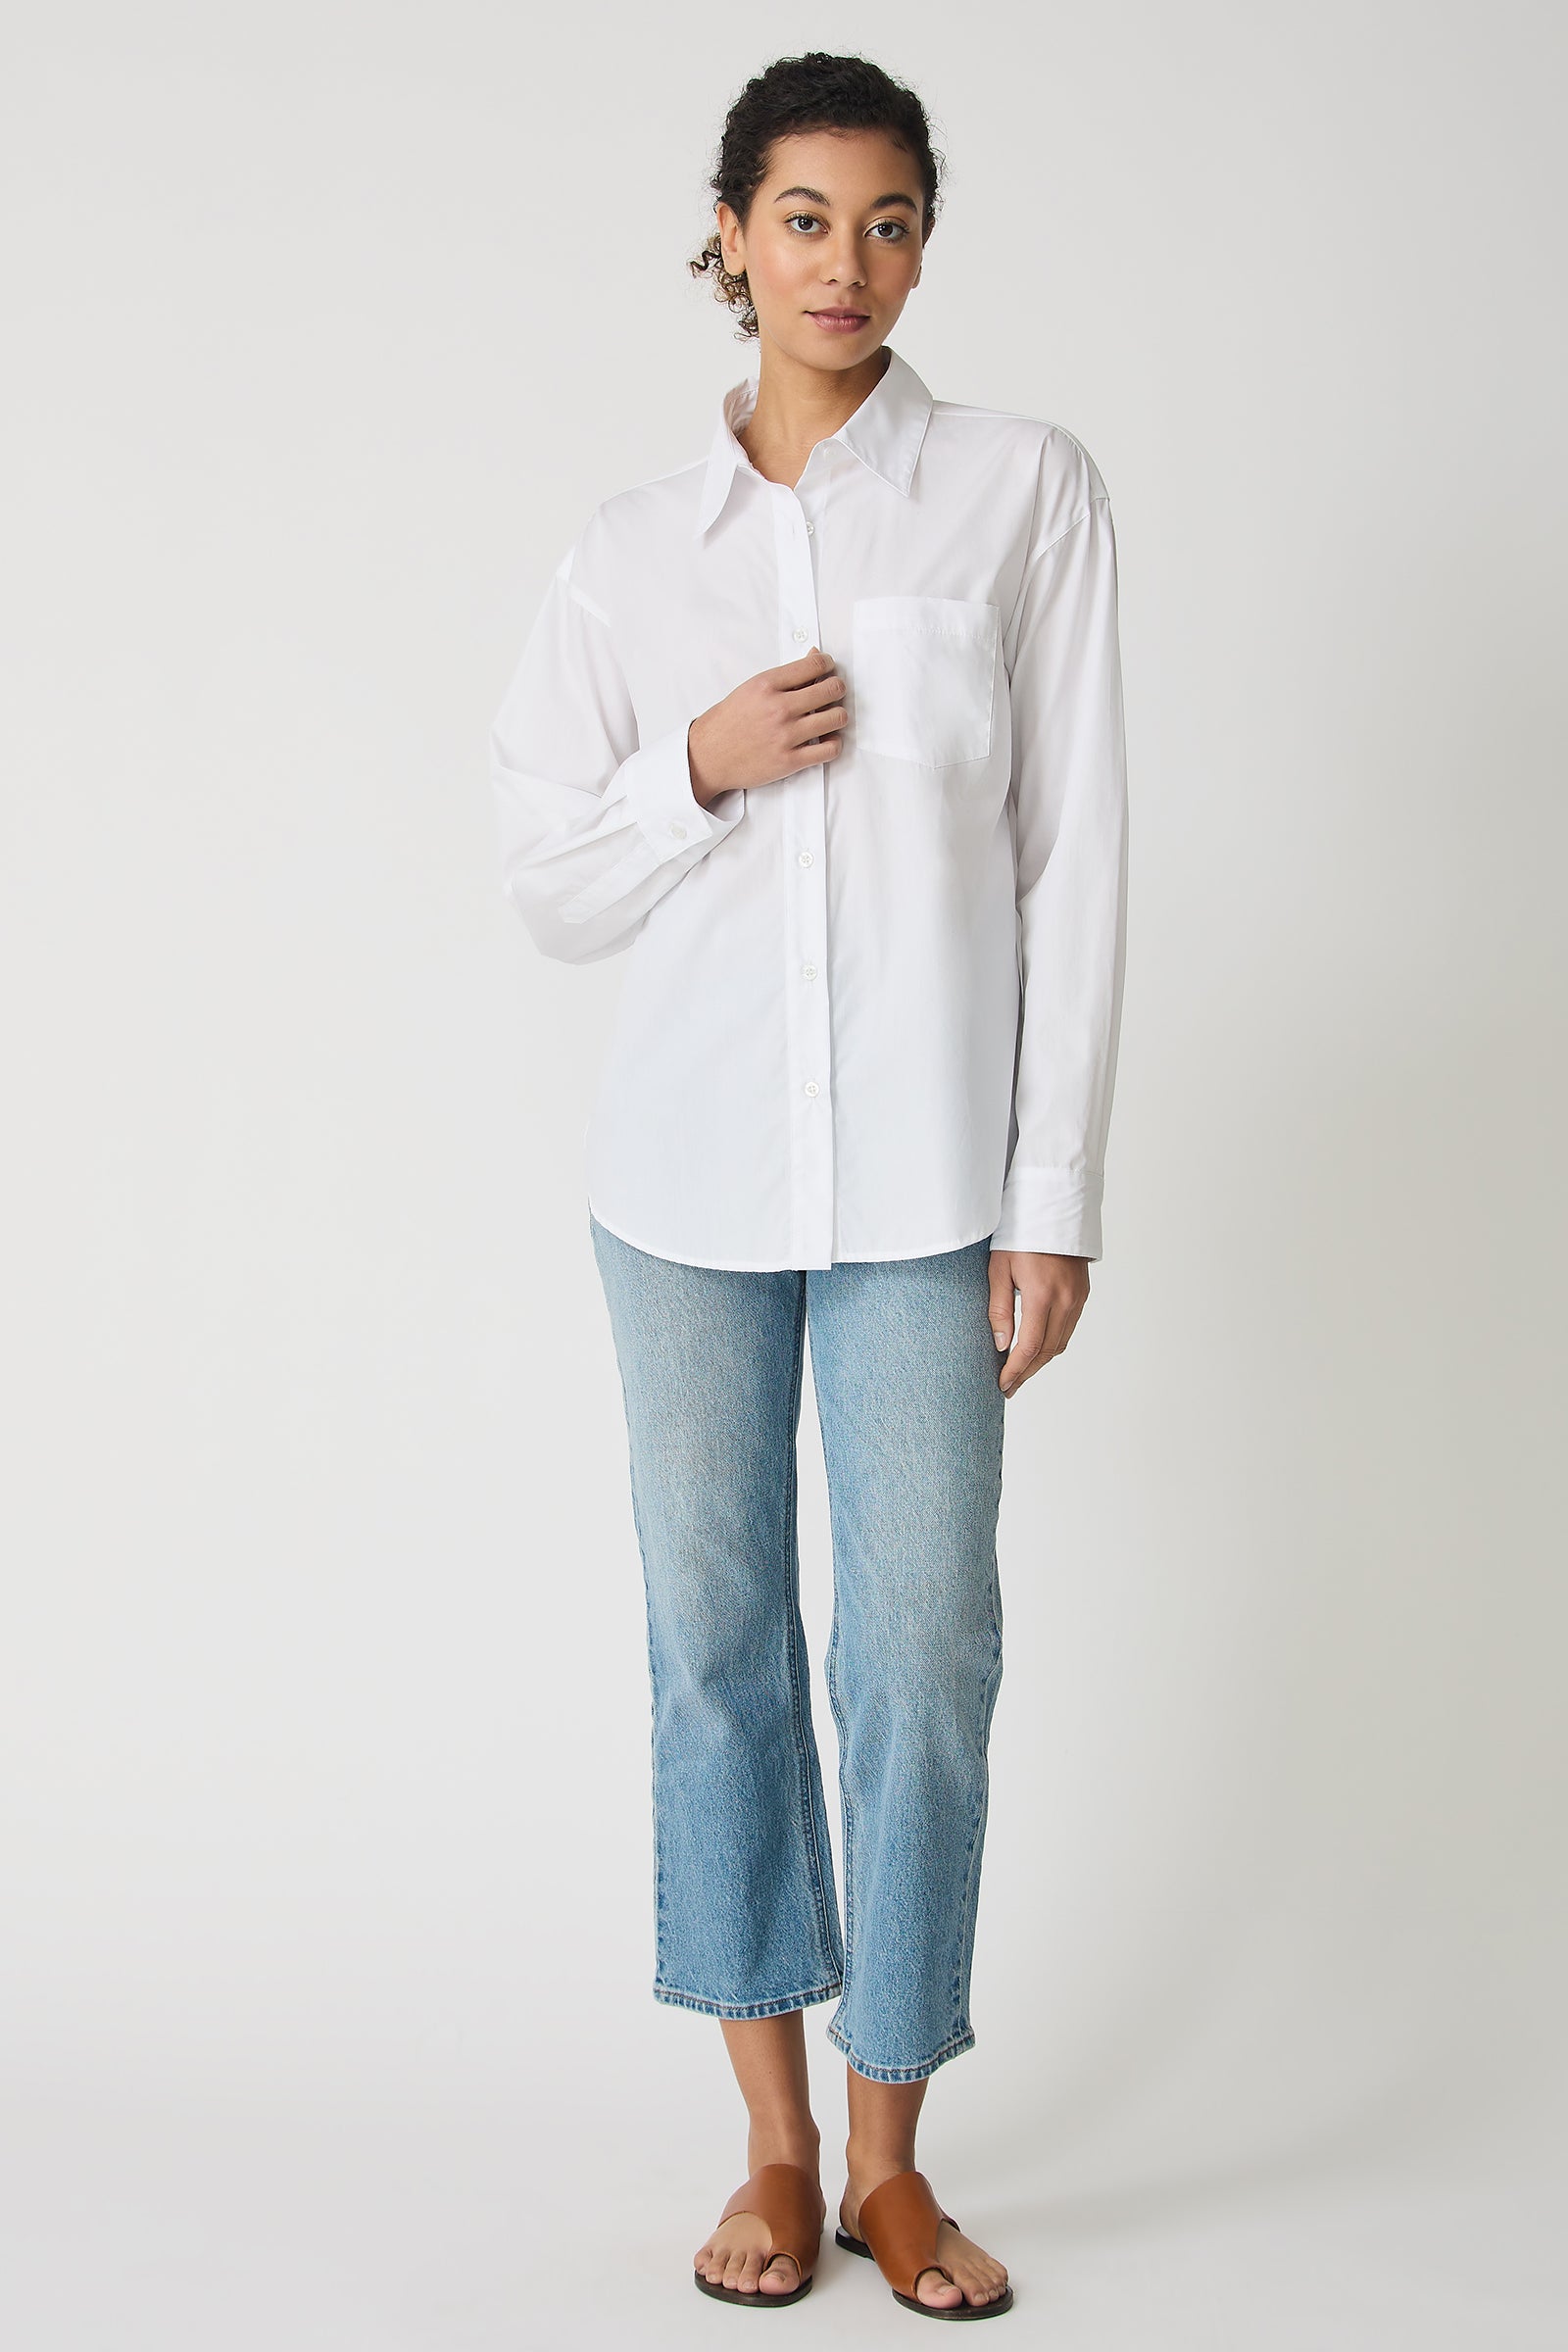 Kal Rieman Joni Boyfriend Shirt in White Poplin on model full front view